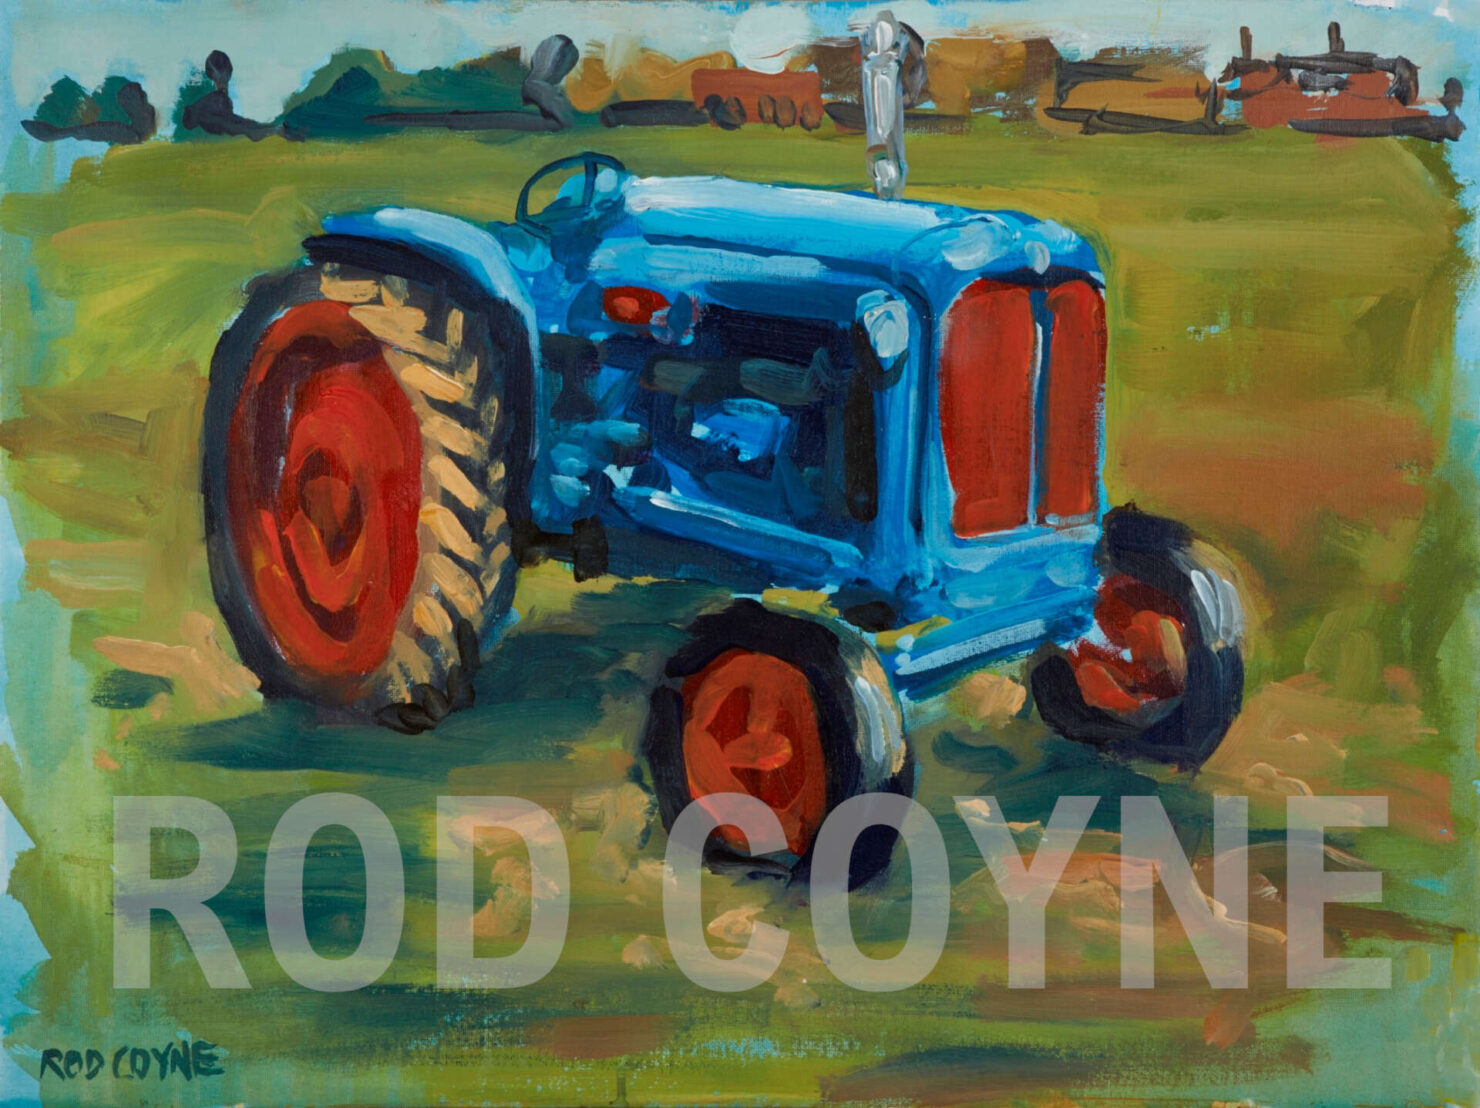 artist rod coyne's "fordson major" painting